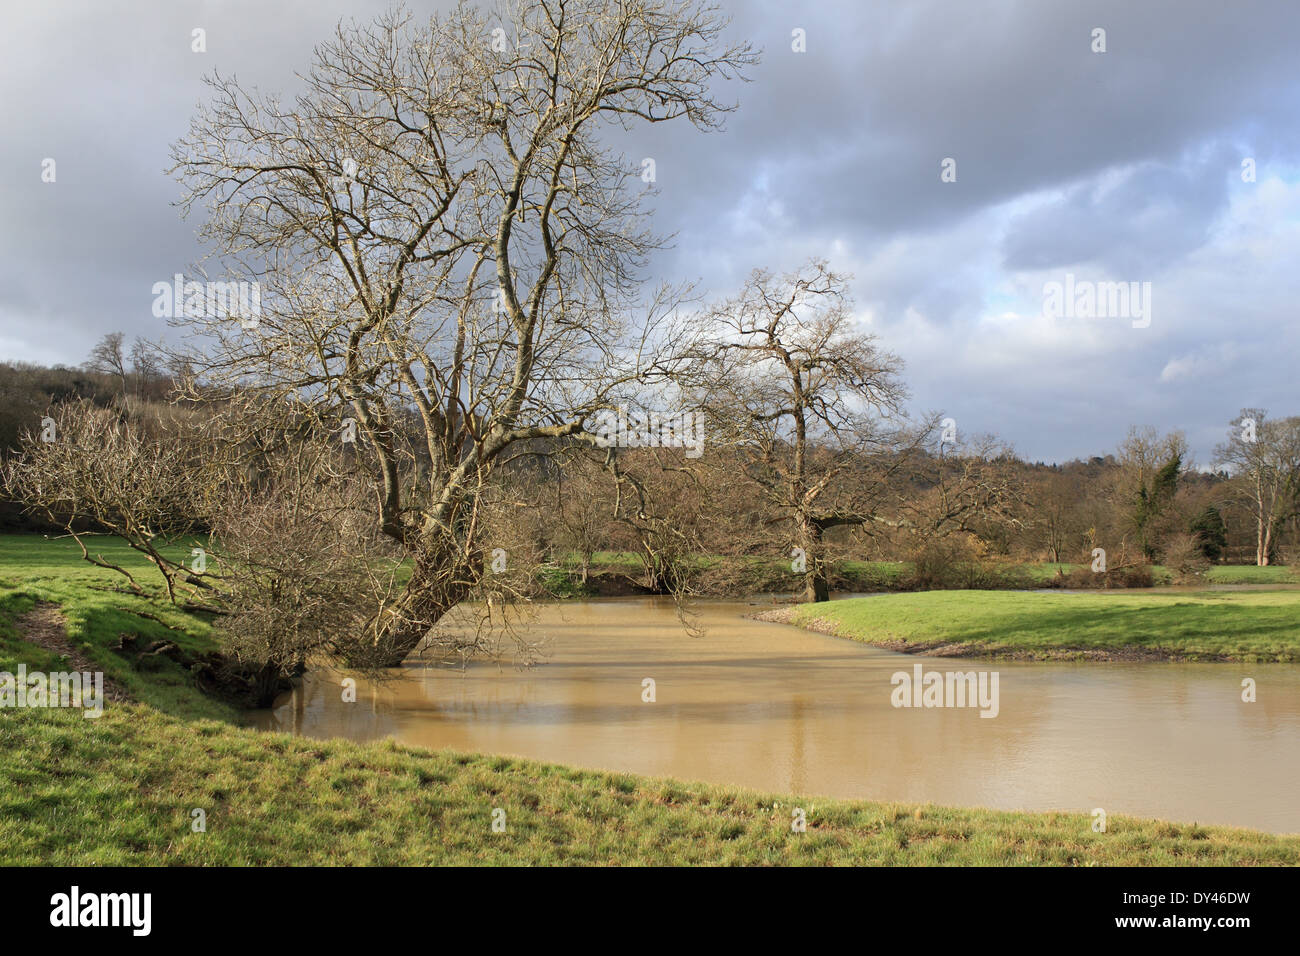 Oxbow lake on the River Mole at Westhumble near Dorking, Surrey, England, UK Stock Photo